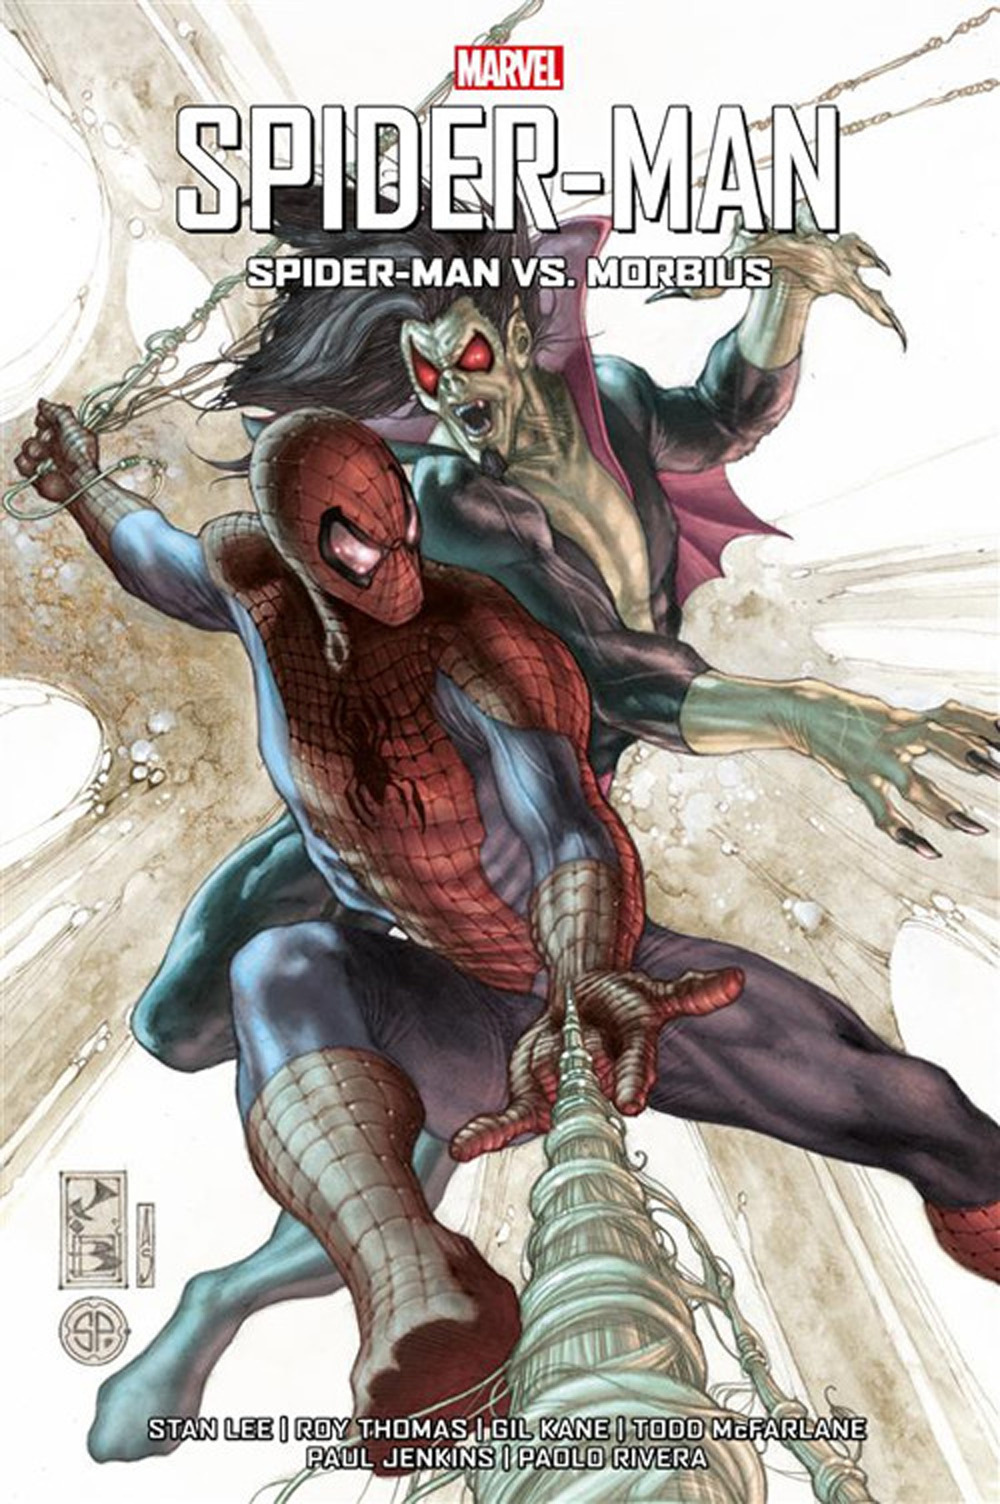 Image of Spider-Man vs. Morbius